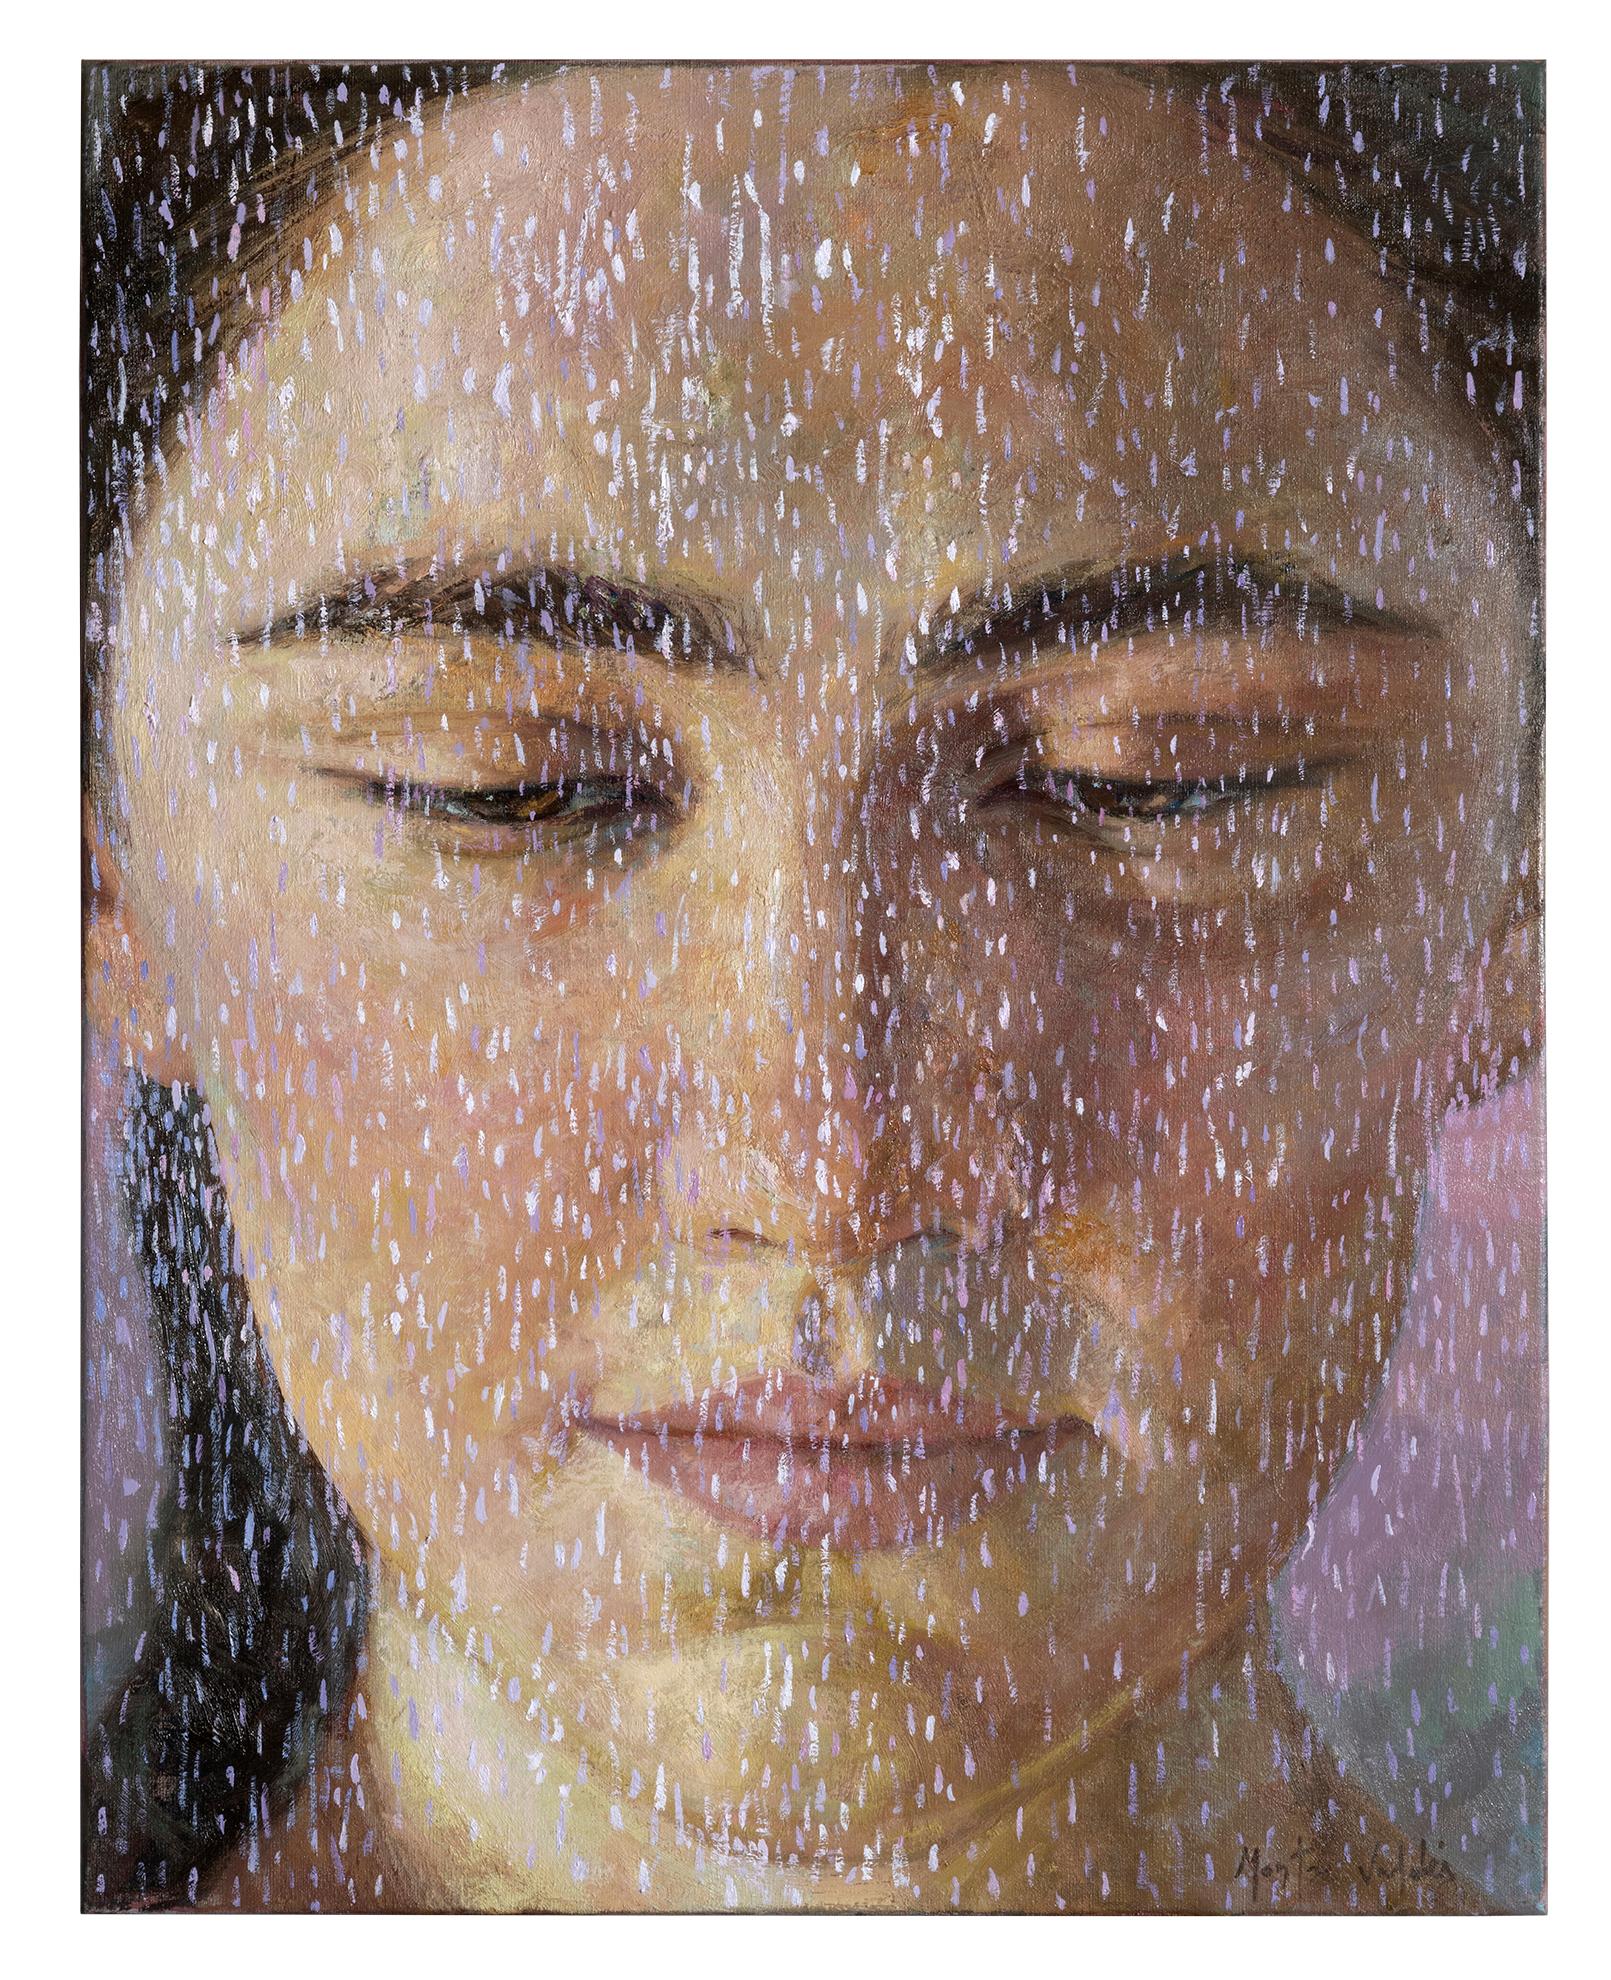 Montse Valdés Figurative Painting - 1-4-9, 21st Century, Contemporary, Portrait Painting, Oil on Canvas